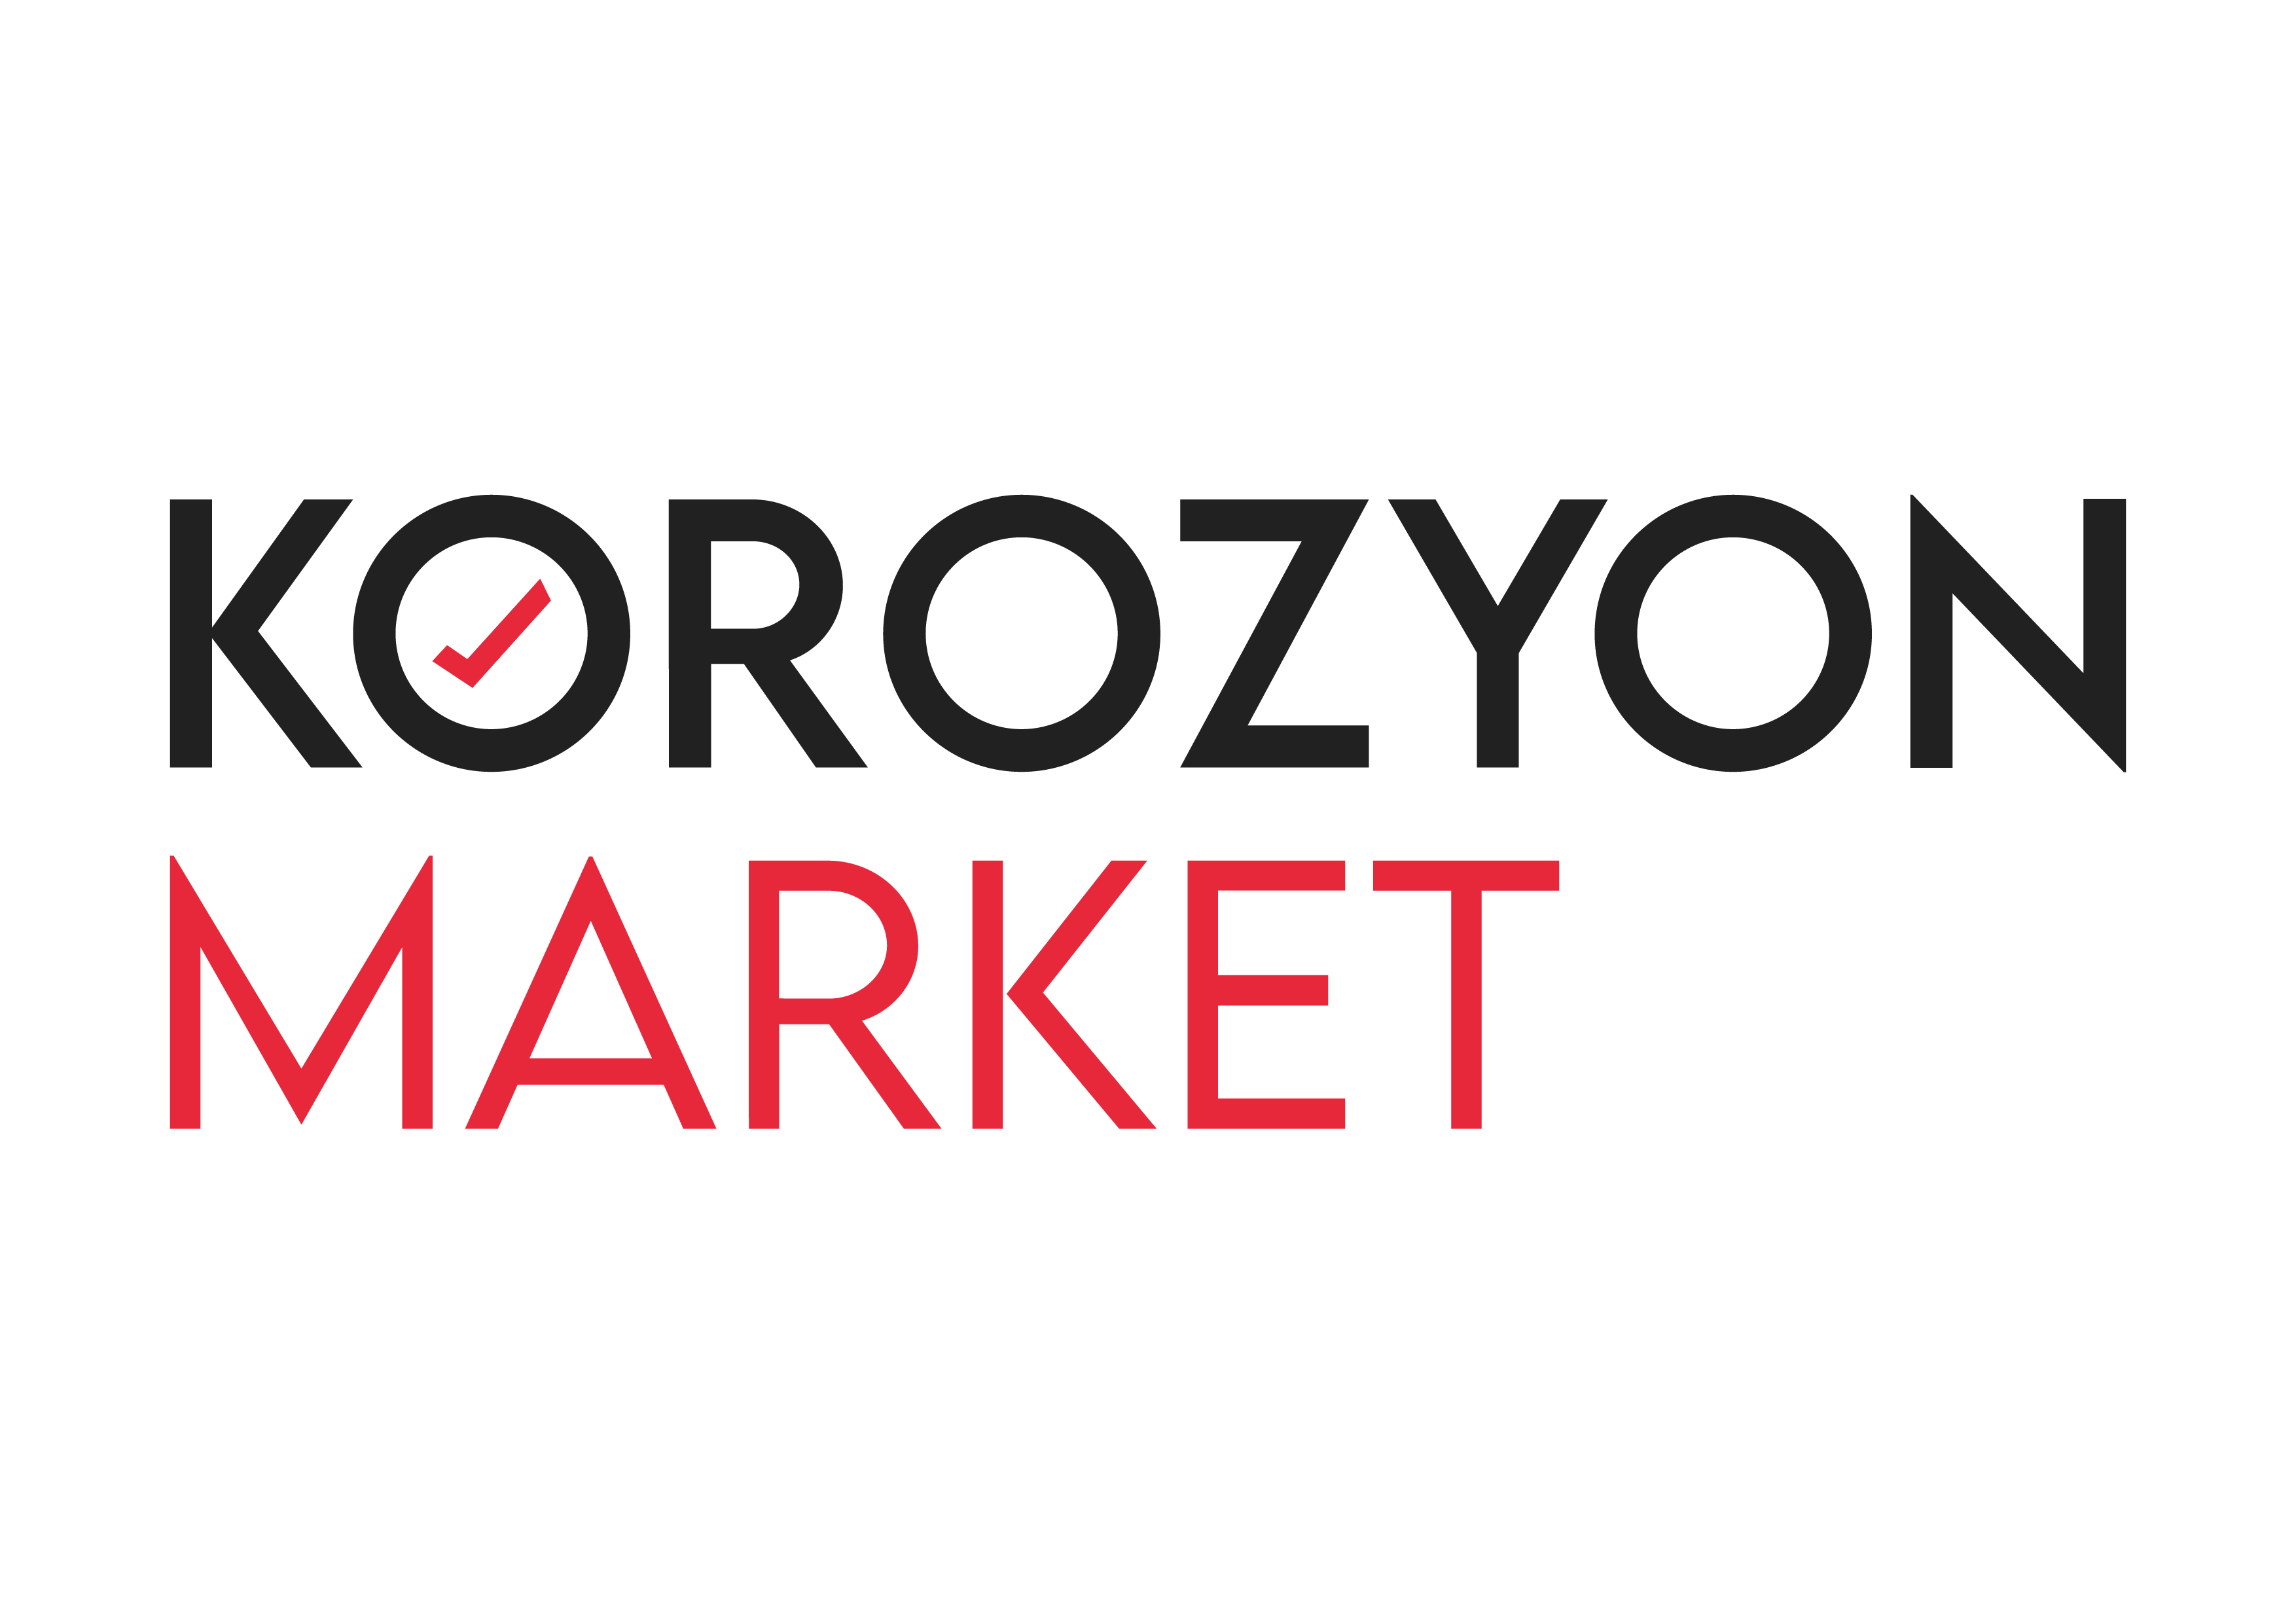 Korozyon Market - Tersane Sektörü, Kumlama - Boyama Malzemeleri